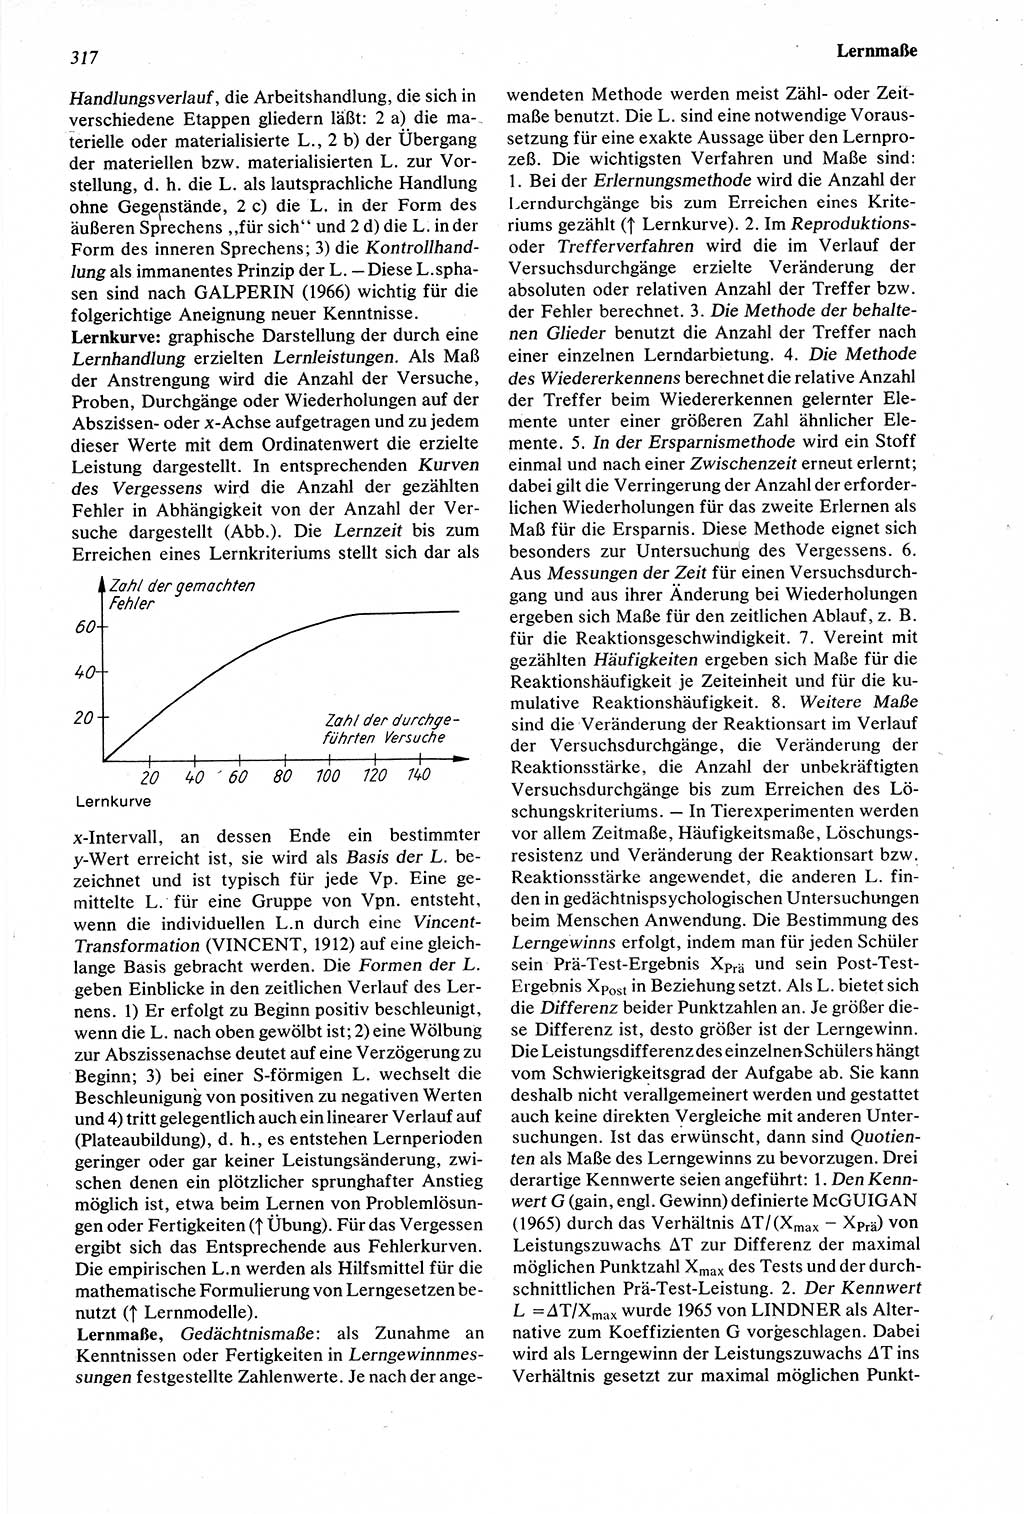 Wörterbuch der Psychologie [Deutsche Demokratische Republik (DDR)] 1976, Seite 317 (Wb. Psych. DDR 1976, S. 317)